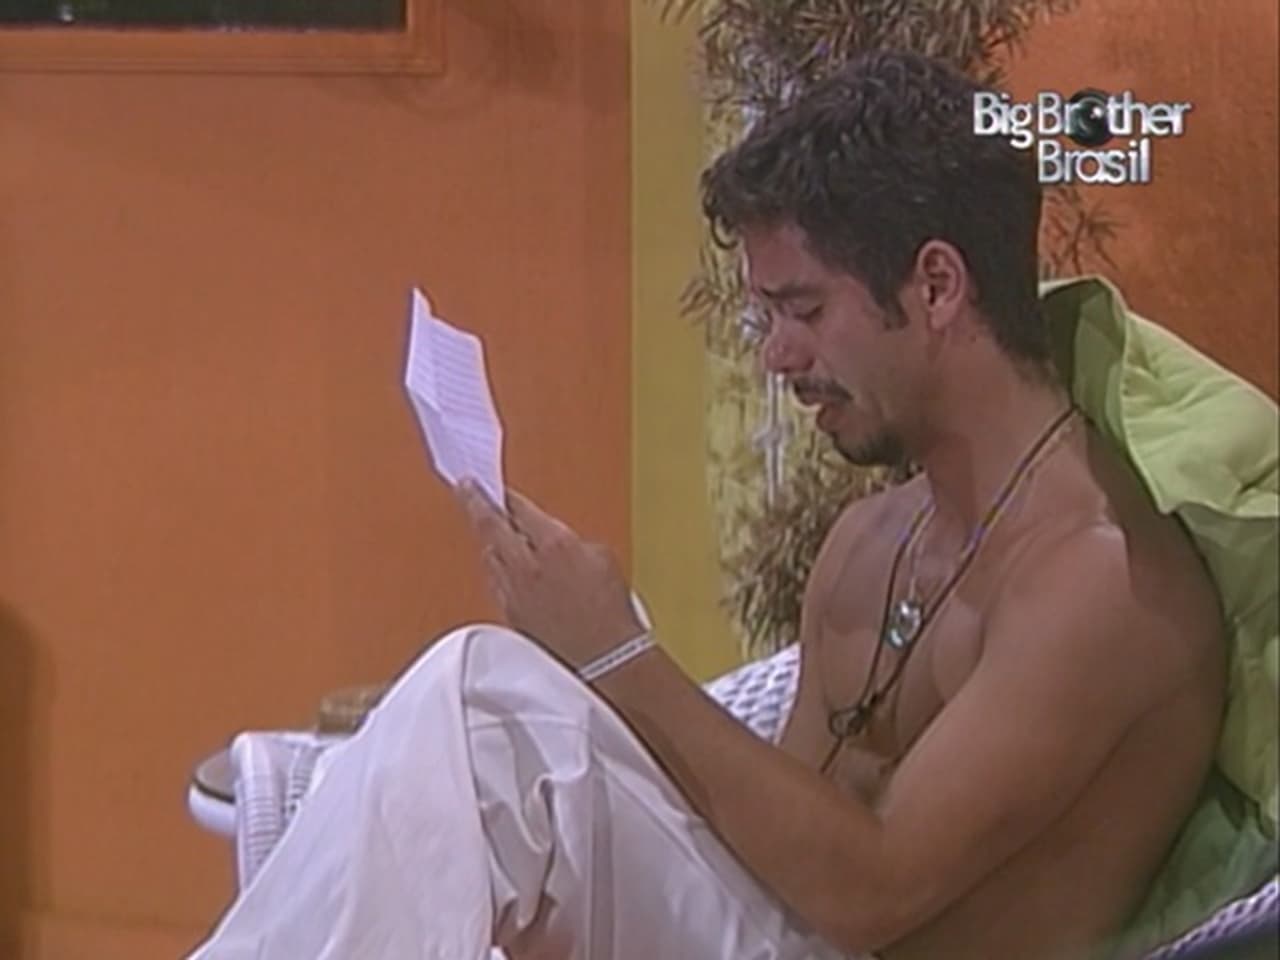 Big Brother Brasil - Season 4 Episode 40 : Episode 40